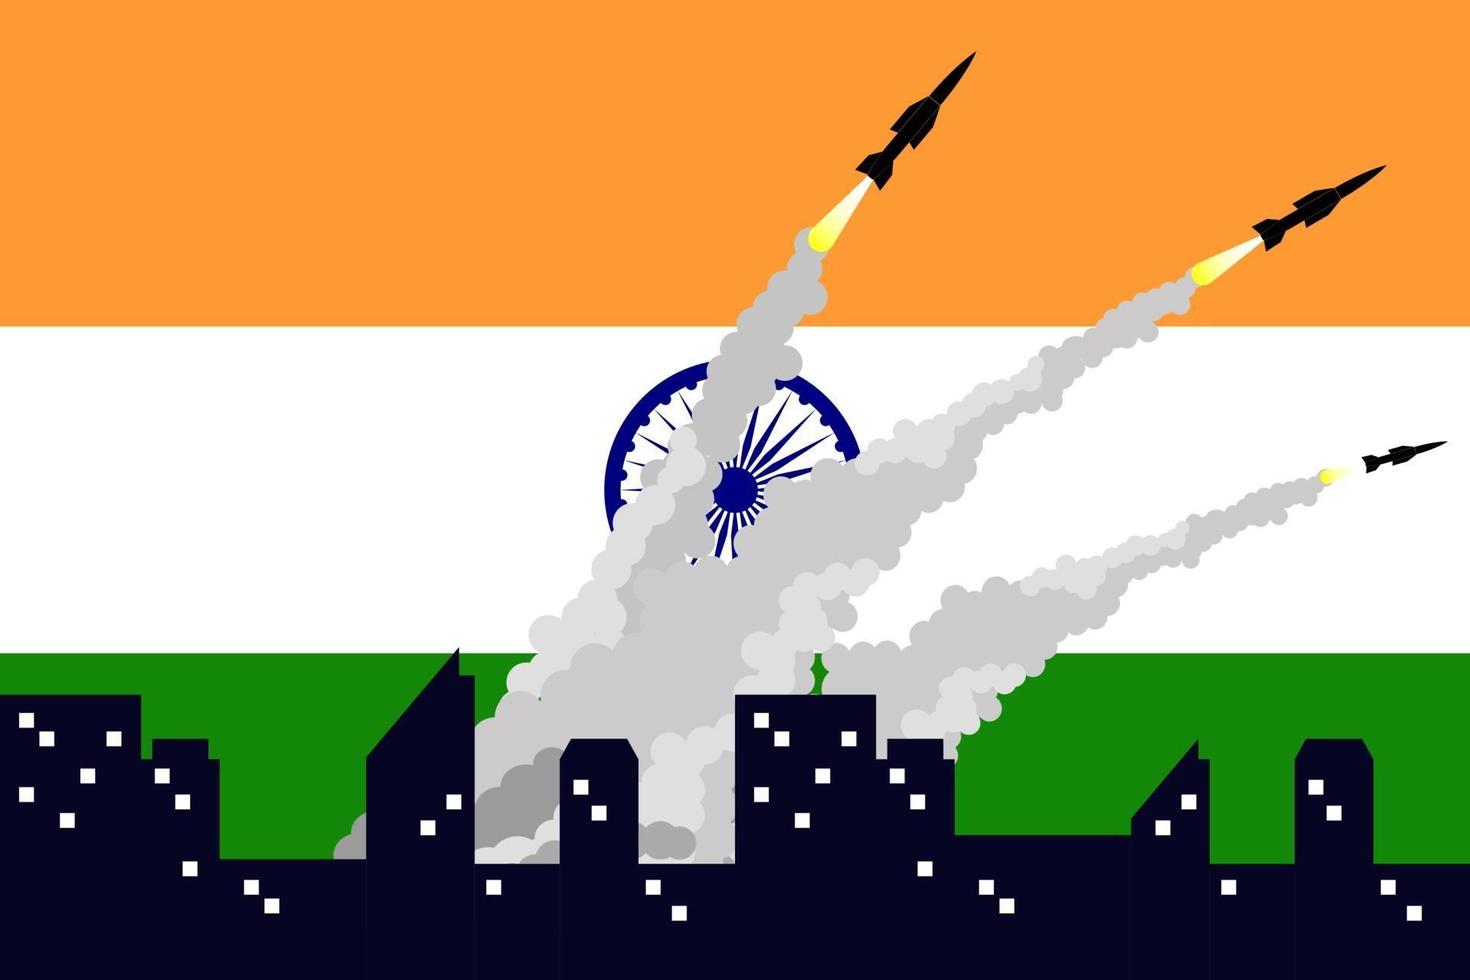 illustration av att skjuta missiler på indiens flaggbakgrund. vektor